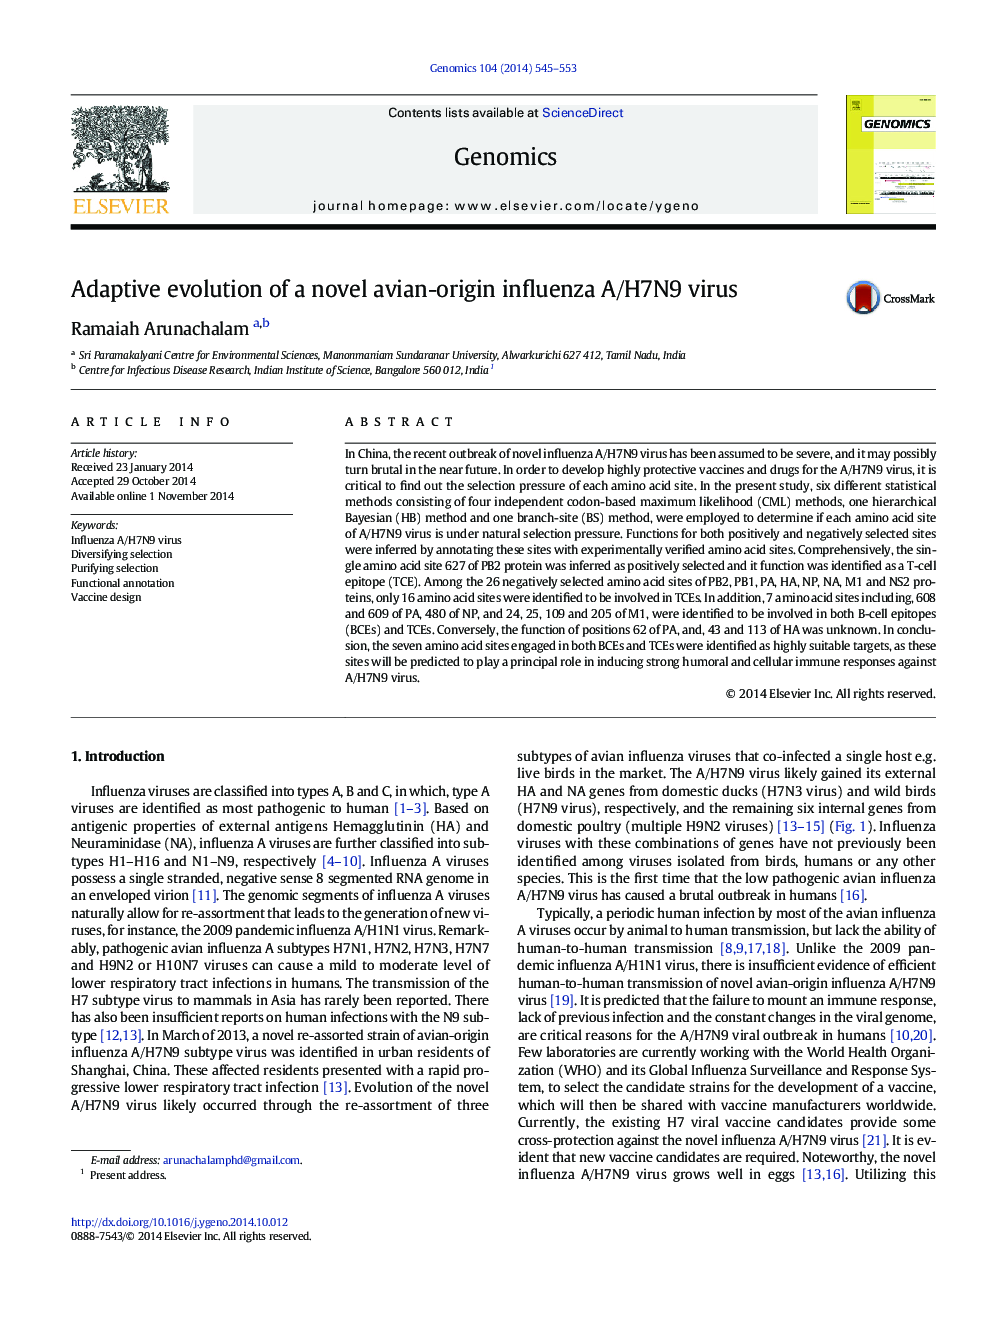 Adaptive evolution of a novel avian-origin influenza A/H7N9 virus